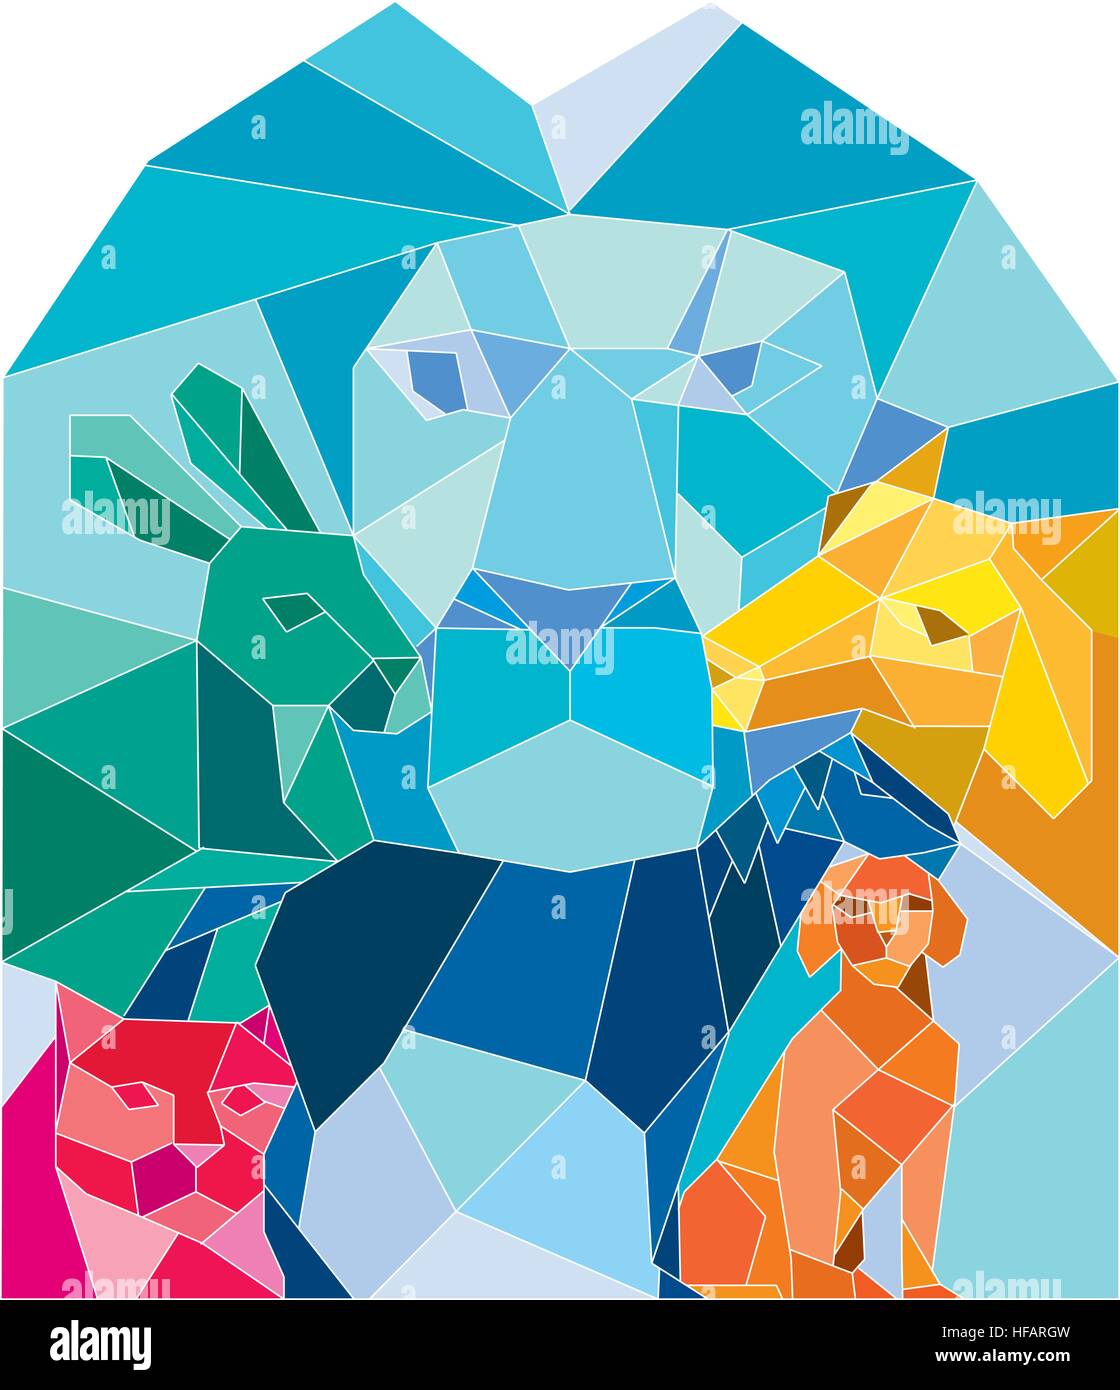 Niedrige Polygon Stil Illustration ein Löwe, Hase, Katze, Pferd, Hund und Ziege von vorne am isolierten weißen Hintergrund betrachtet. Stock Vektor